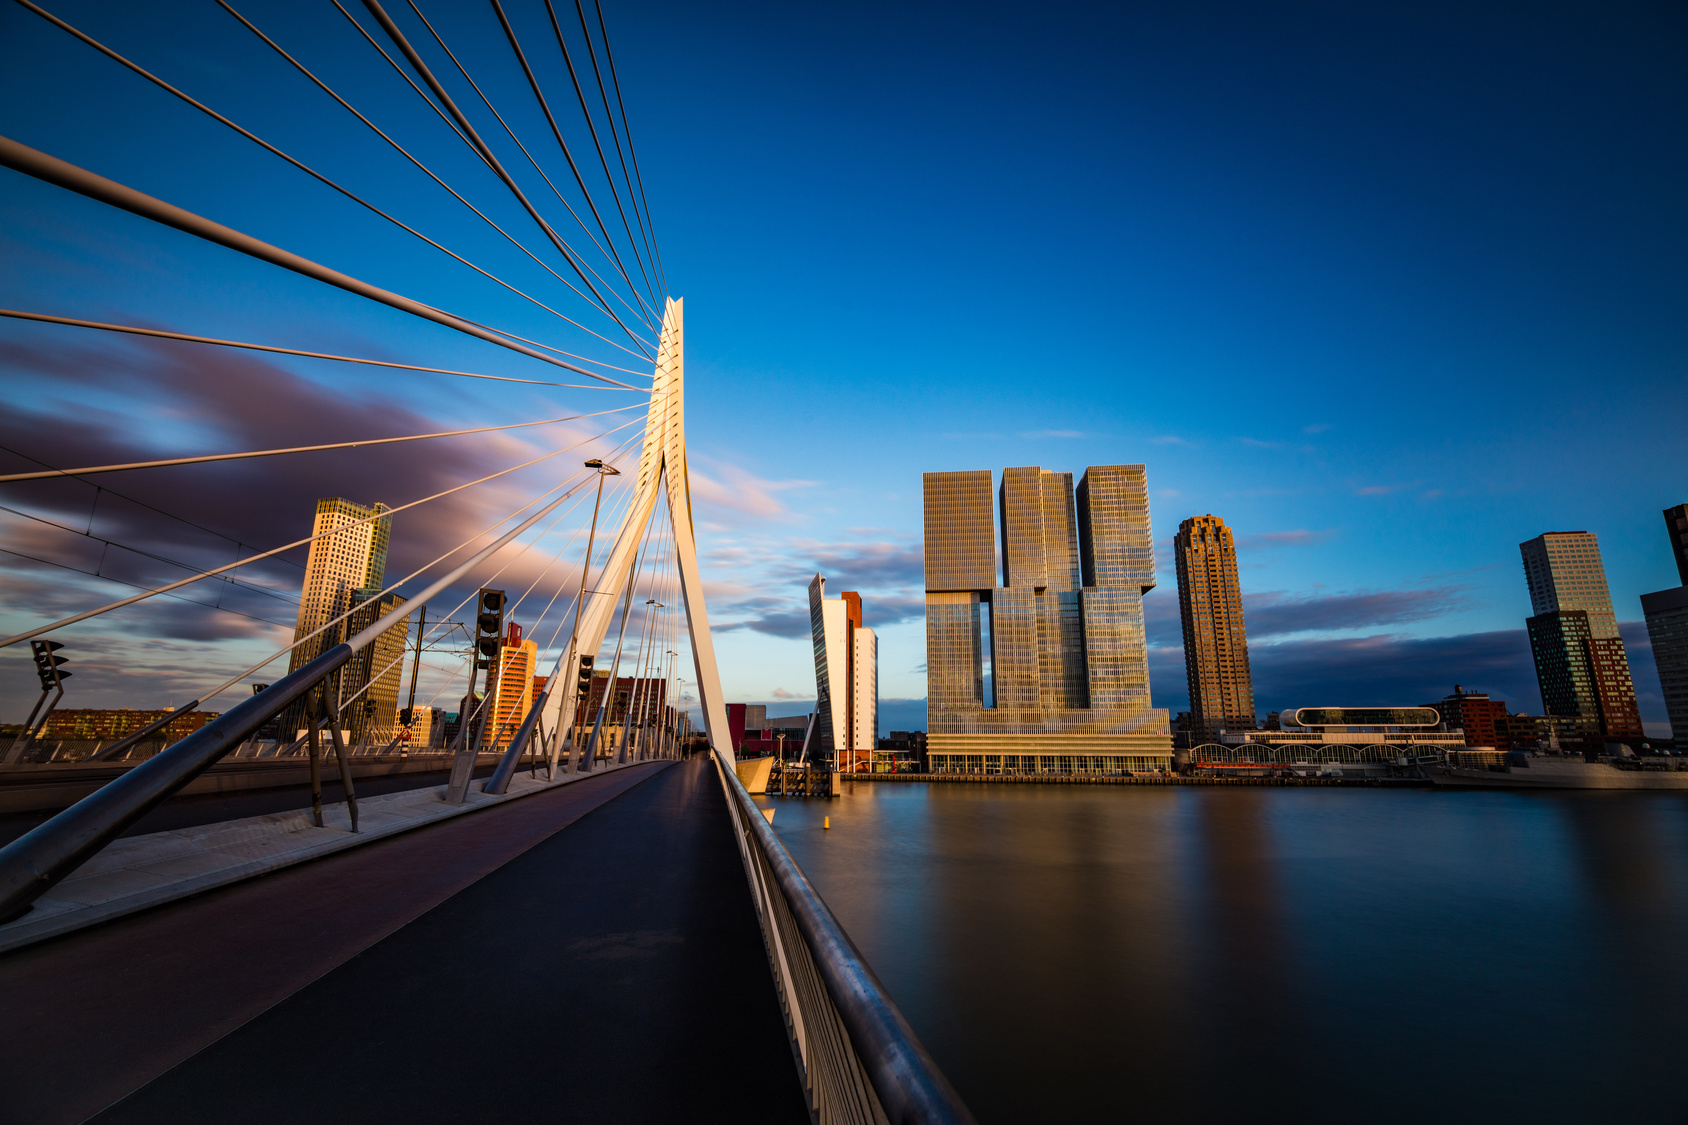 Rotterdam Biuro podróży Goforworld by Kuźniar